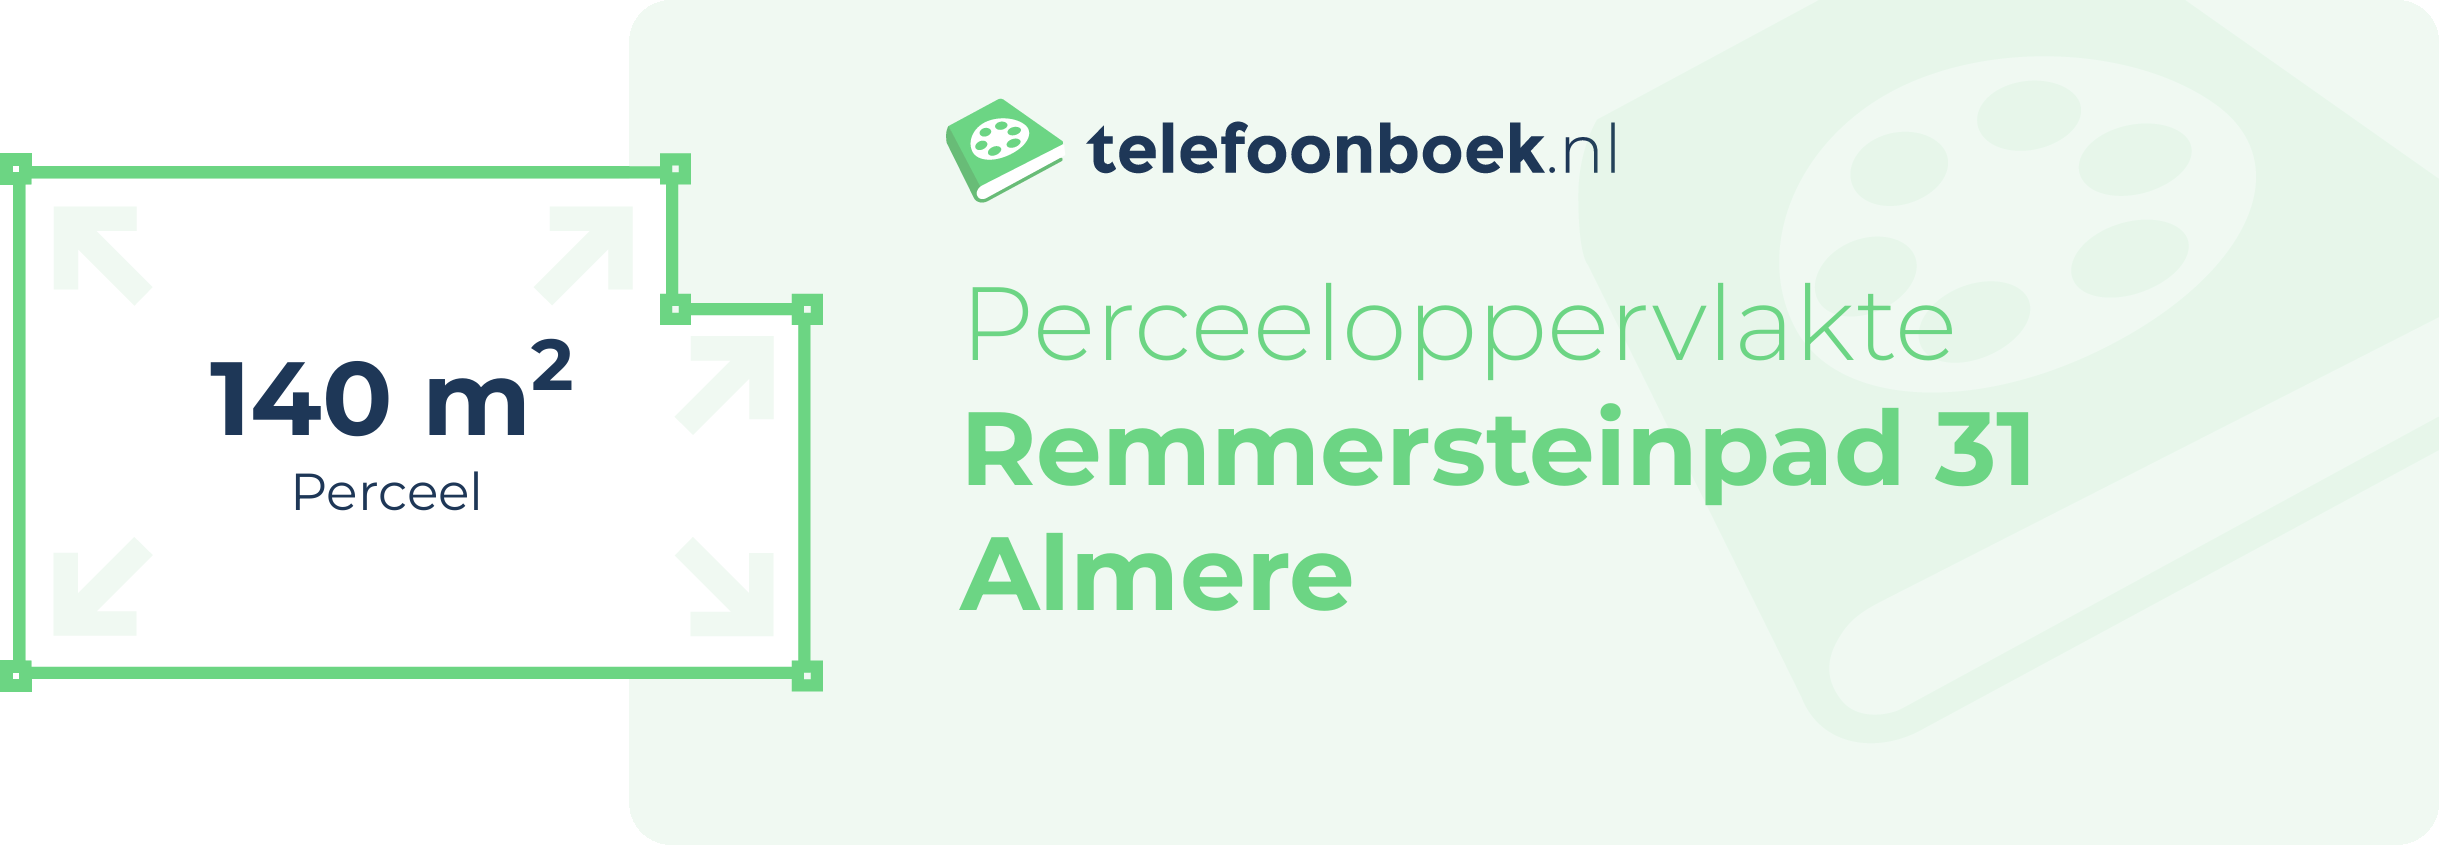 Perceeloppervlakte Remmersteinpad 31 Almere